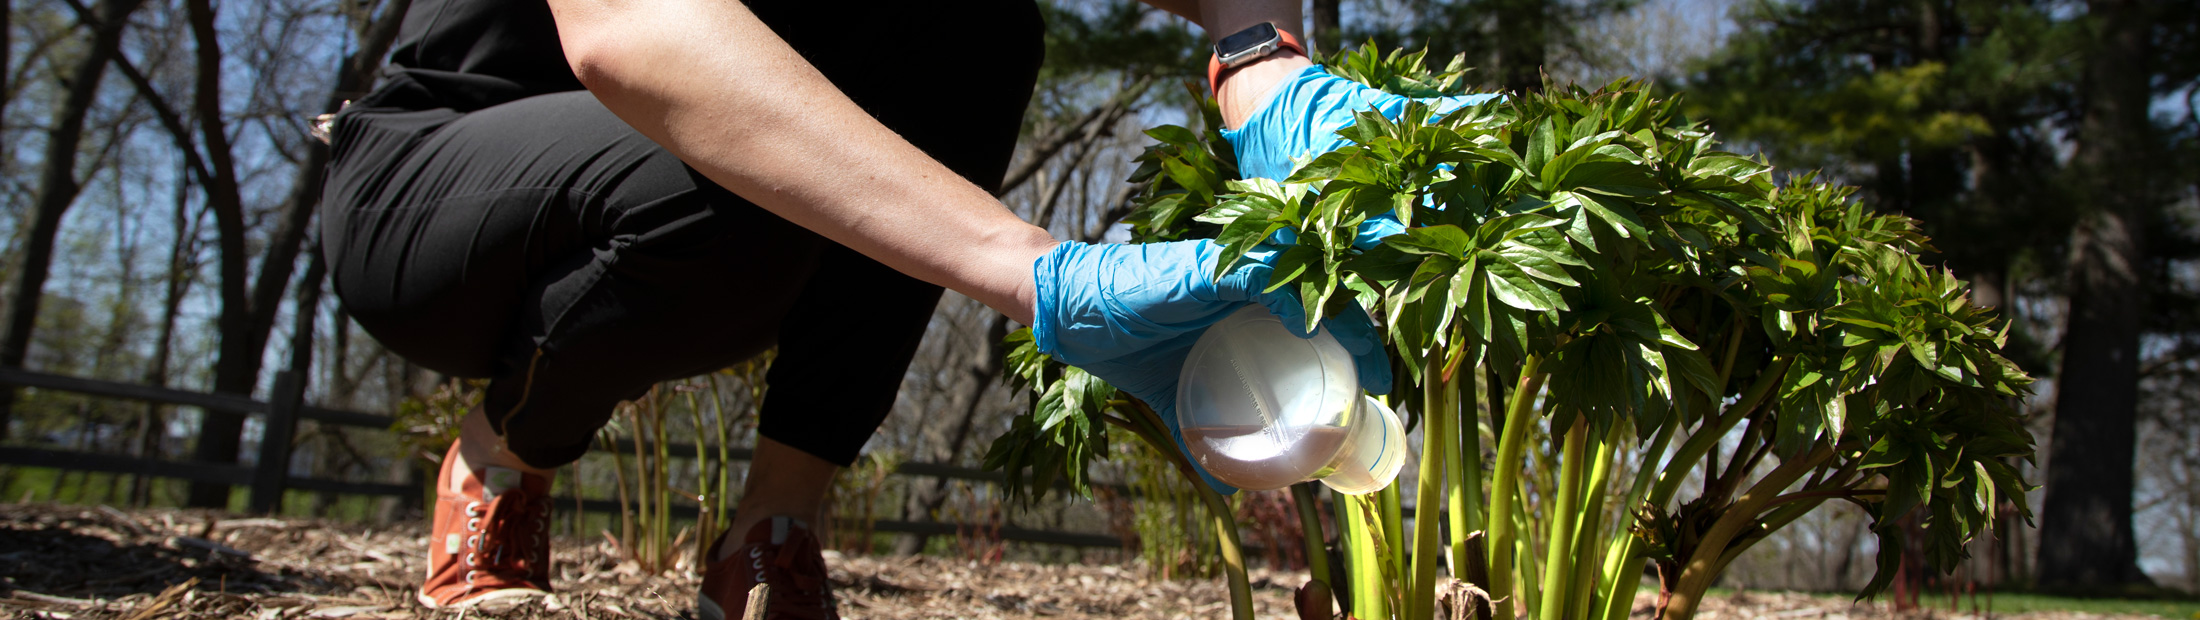 Researcher Krista Wigginton pouring fertilizer on a plant